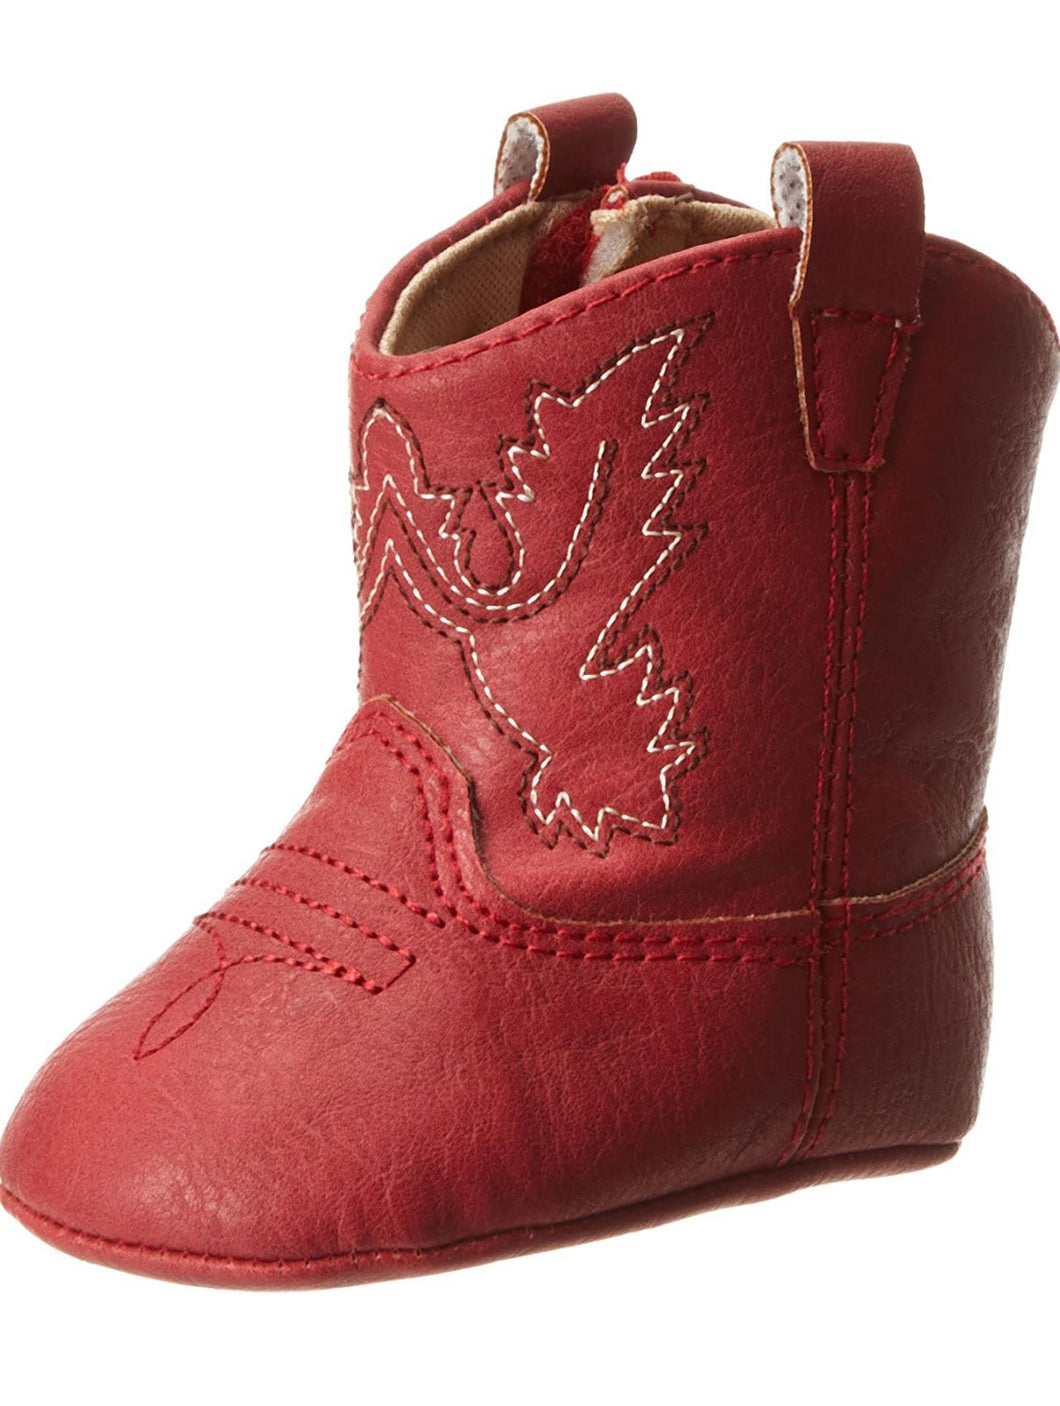 Baby Deer Red Western Boot